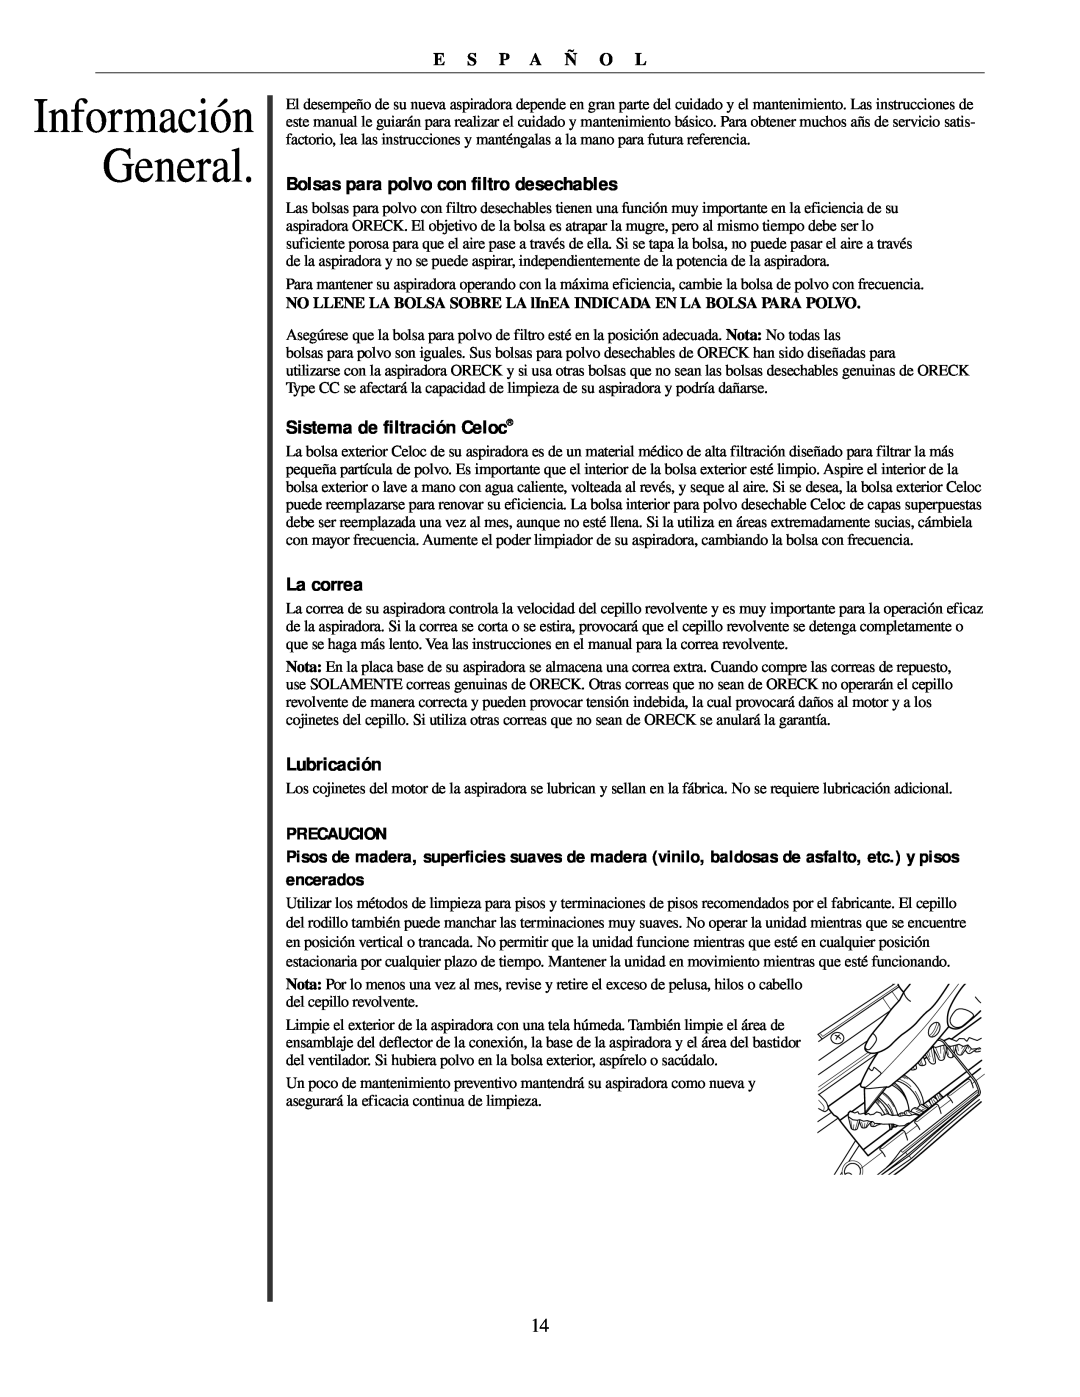 Oreck U2251 manual Información General, Bolsas para polvo con filtro desechables, Sistema de filtración Celoc, La correa 